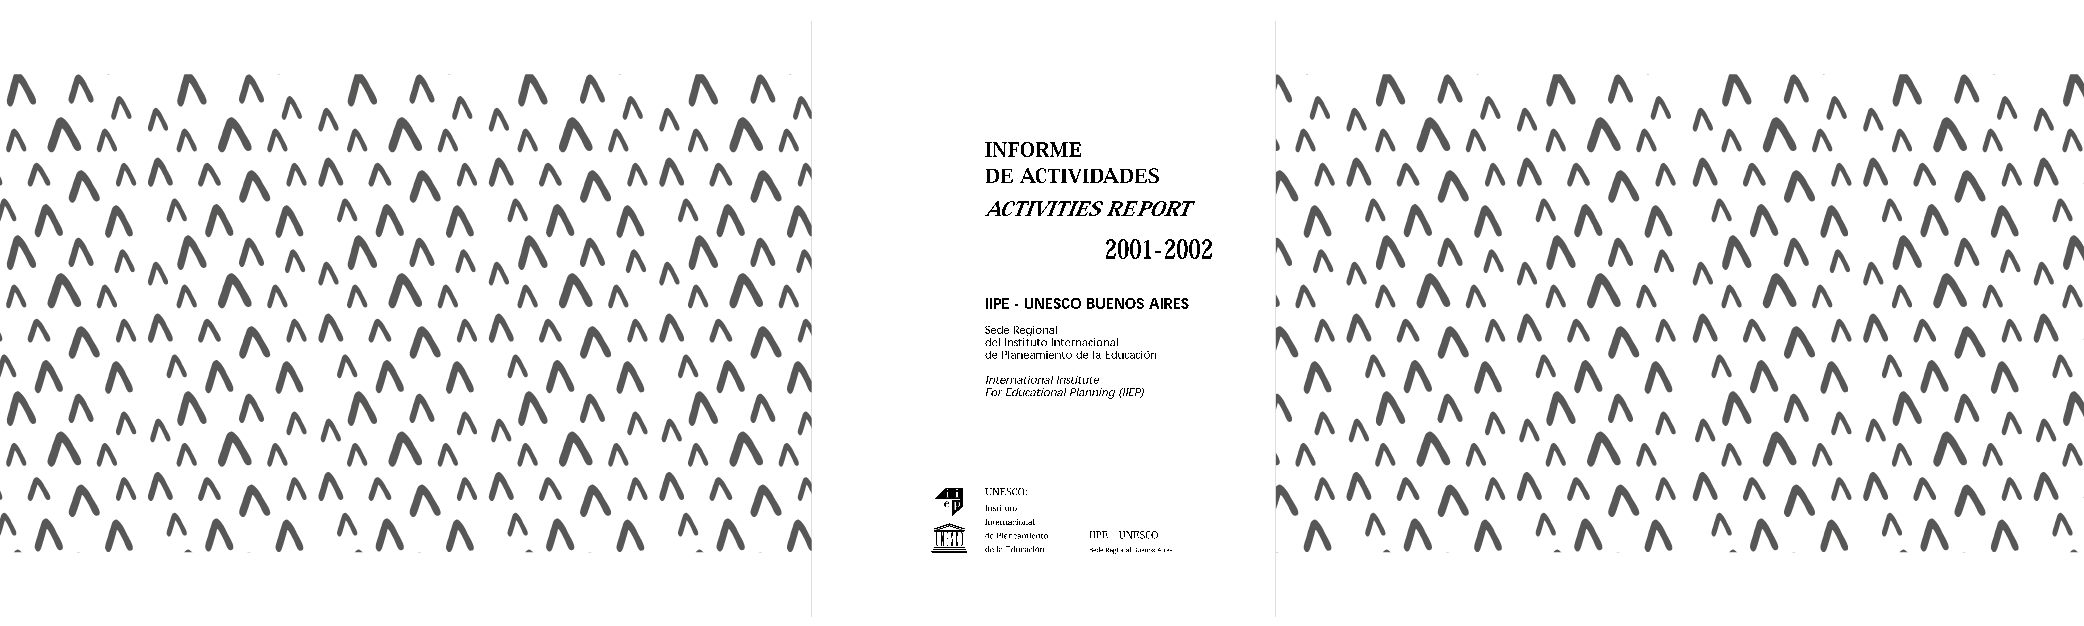 Informe de actividades 2001